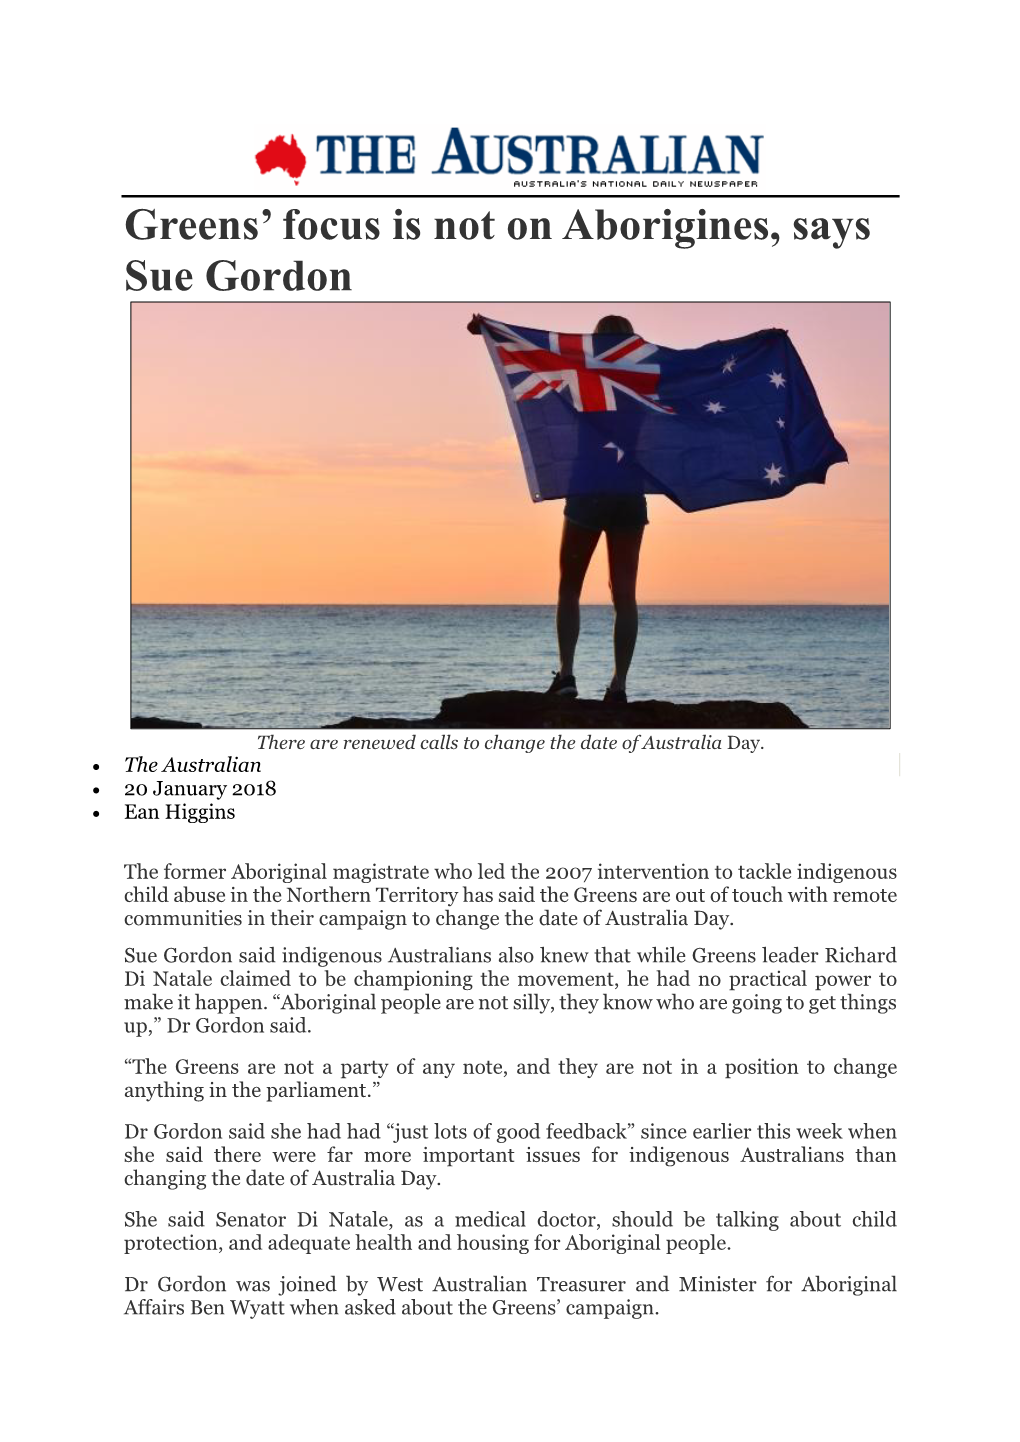 Greens' Focus Is Not on Aborigines, Says Sue Gordon